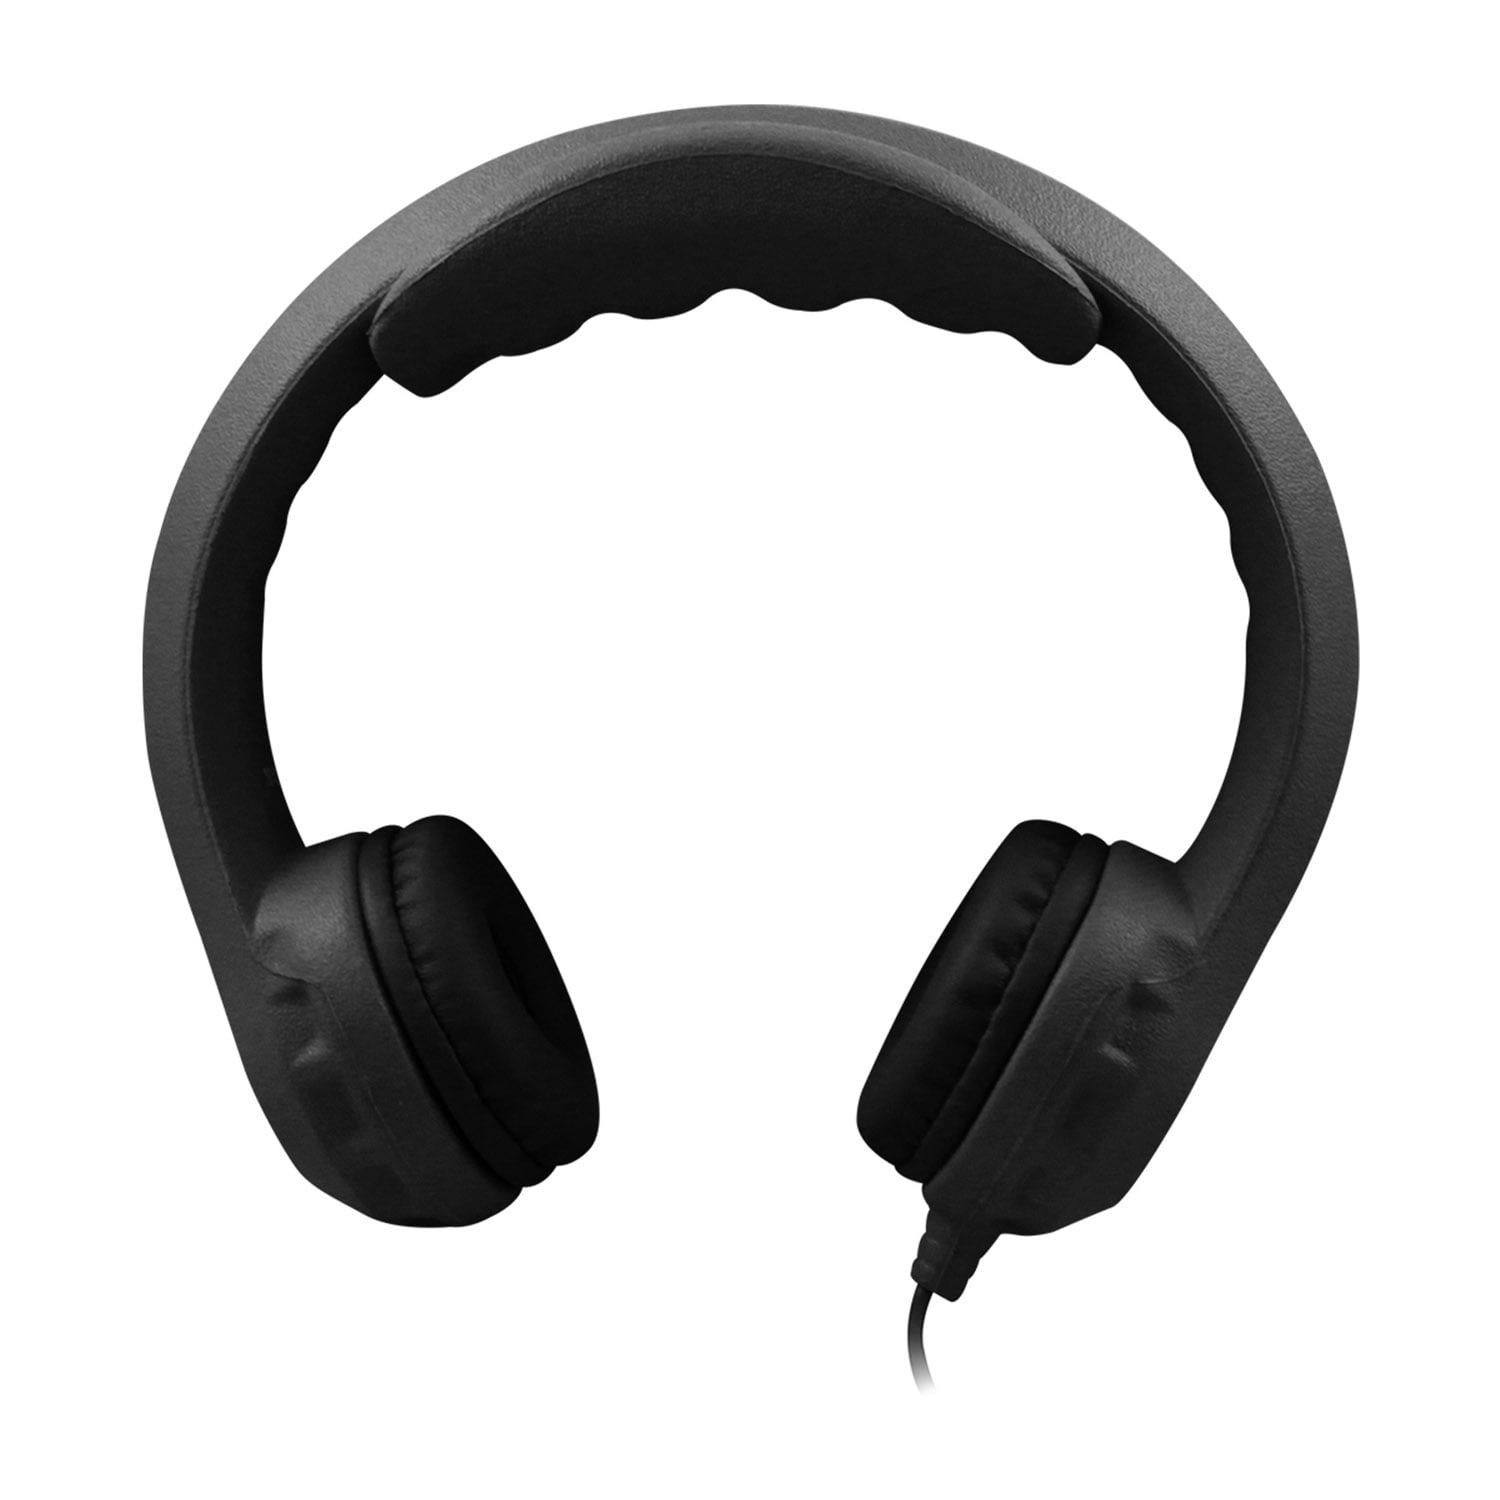 Flex-Phones Indestructible Foam Headphones, Black